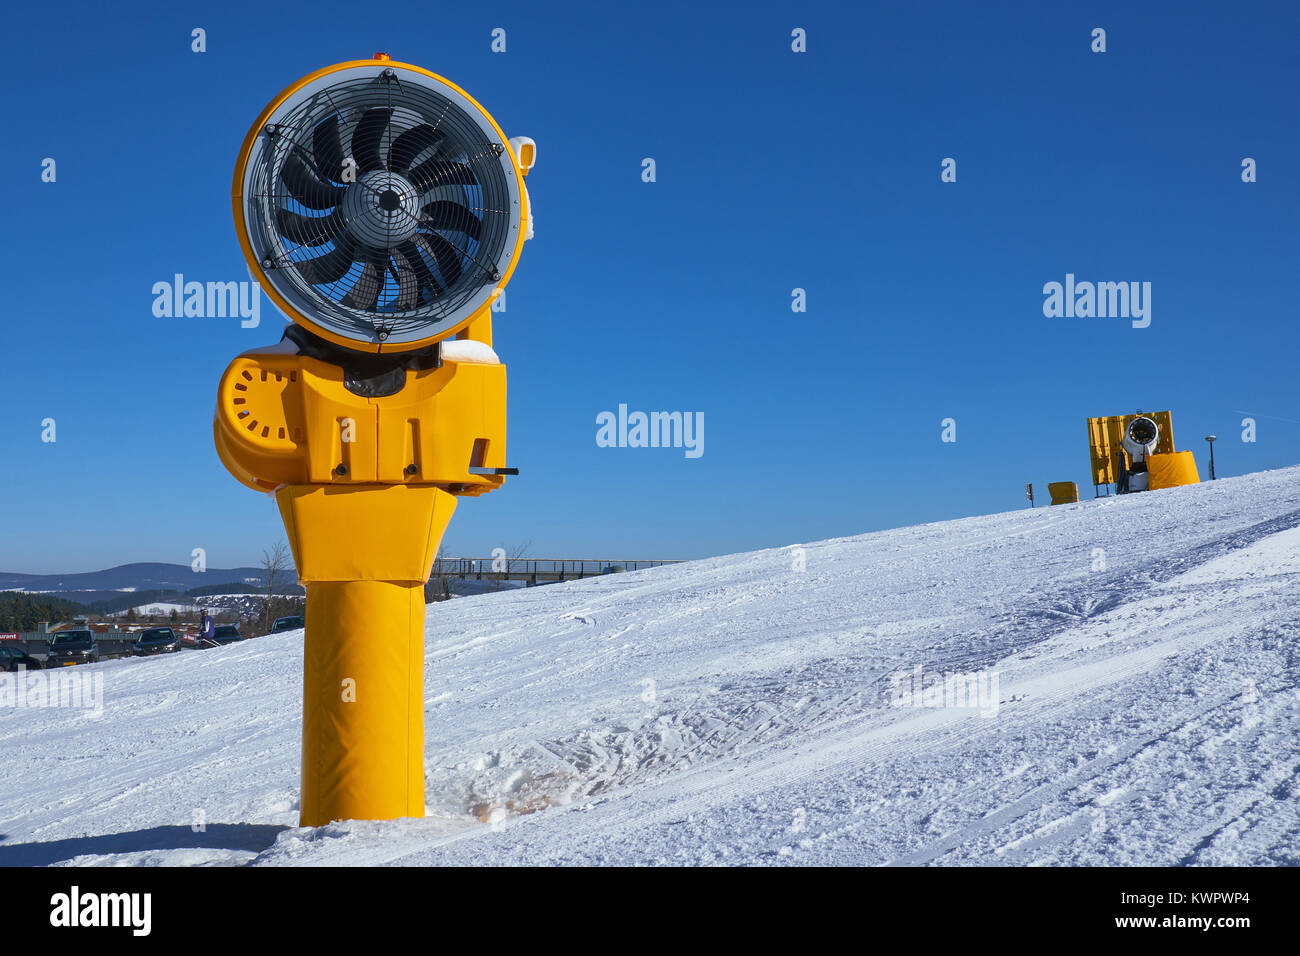 Due spento giallo cannoni da neve su una pista a carosello sciistico Winterberg contro un cielo blu chiaro Foto Stock